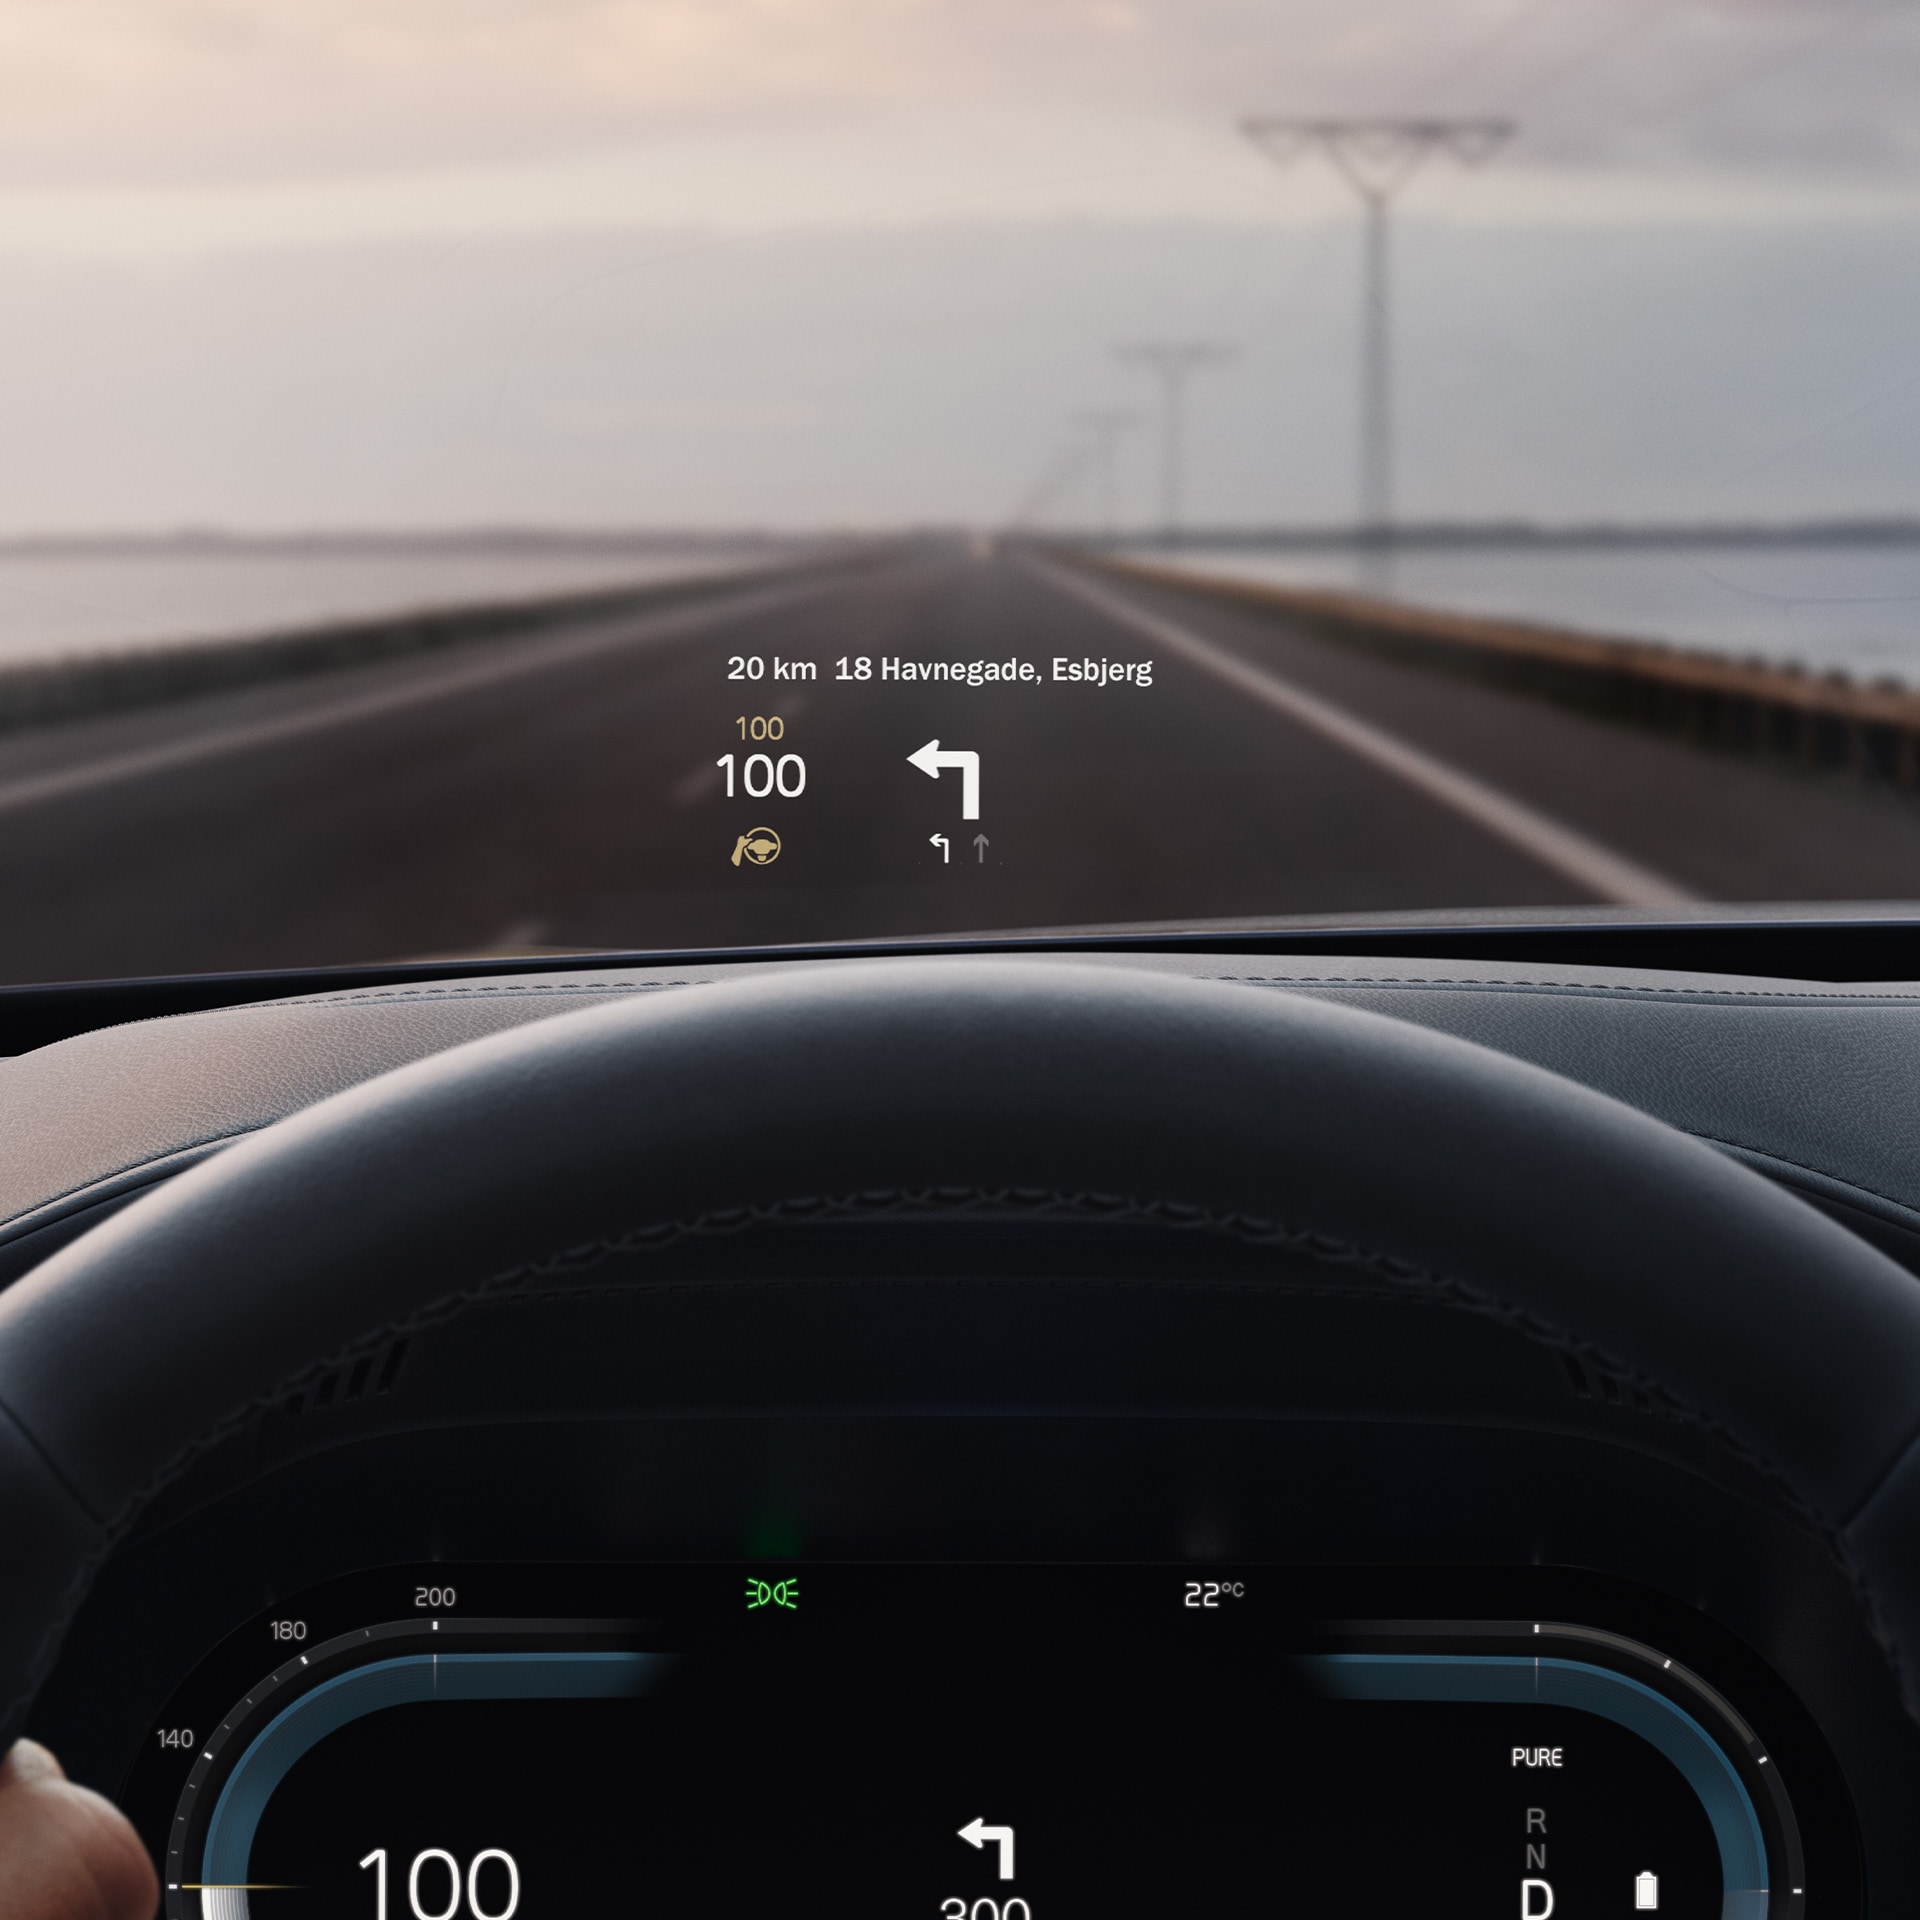 Wyświetlacz przezierny we wnętrzu samochodu Volvo, wskazujący prędkość jazdy i wskazówki nawigacji na przedniej szybie.